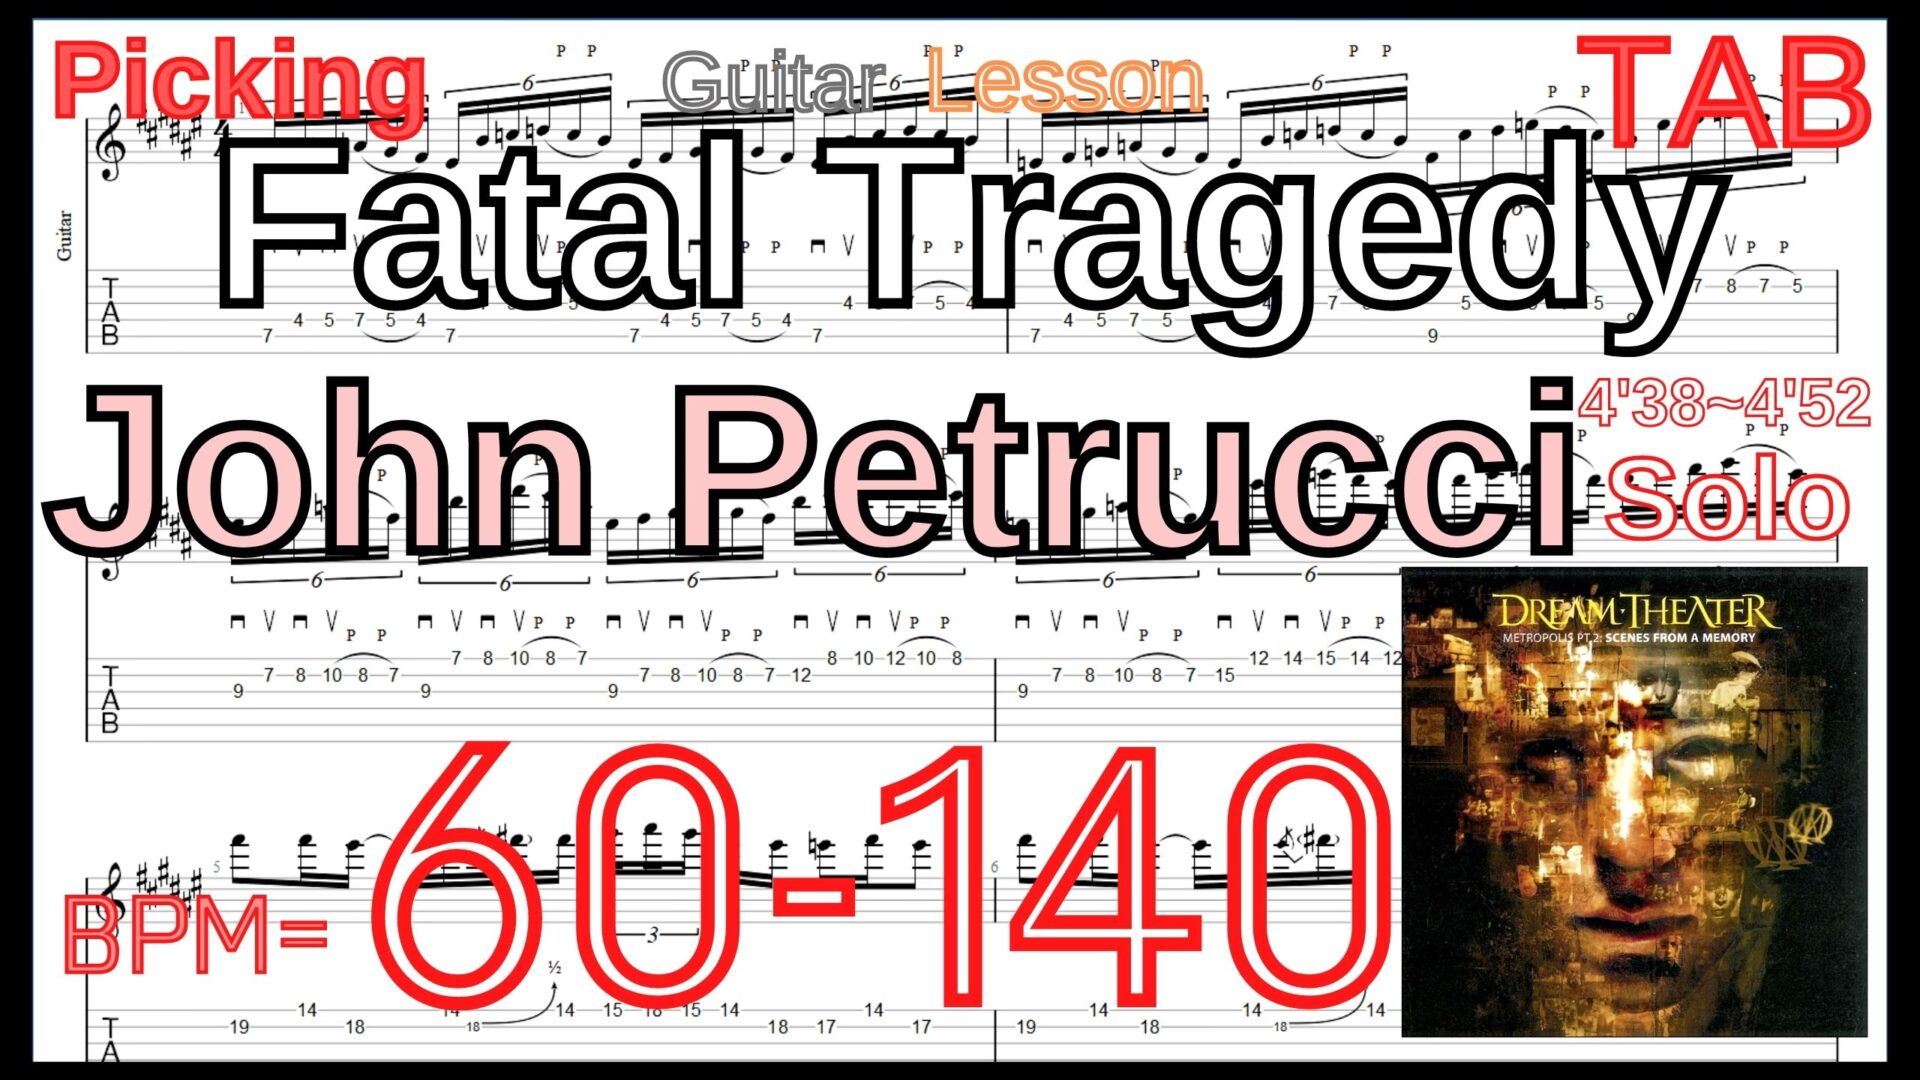 【ギターのピッキング上達練習】Fatal Tragedy Guitar Solo / Dream Theater ドリームシアター ギターソロ 練習 John Petrucci Lesson【Picking/Fingering Regarto】ギターのピッキングが上手くなりたい人にオススメのフレーズ特集｡初心者さんにもオススメ！